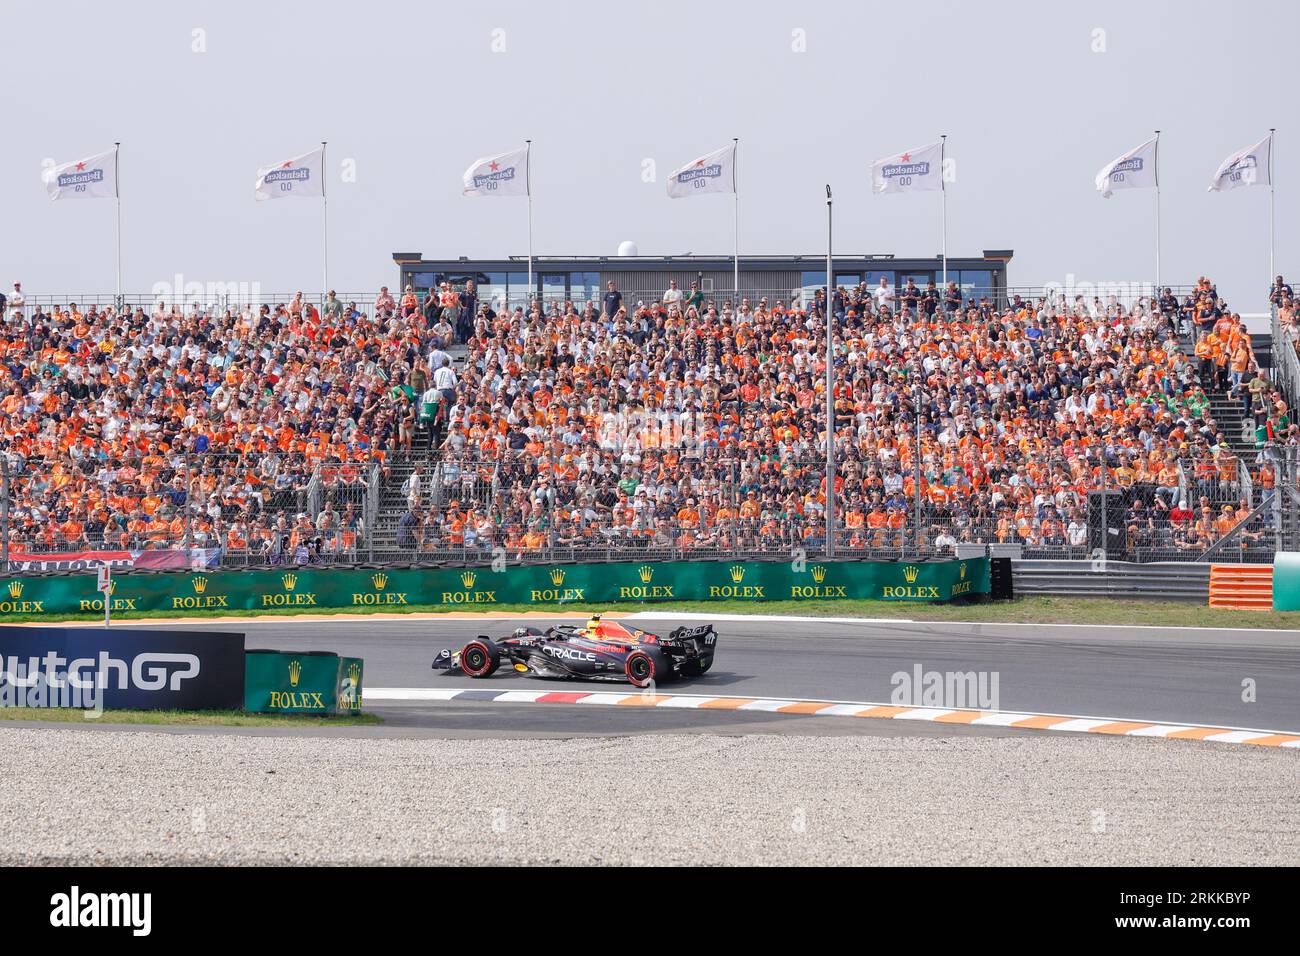 ZANDVOORT, PAYS-BAS - AOÛT 25 : Sergio Perez d'Oracle Red Bull Racing Free Practice fans orange dans les tribunes pendant la Formule 1 au Circ Banque D'Images